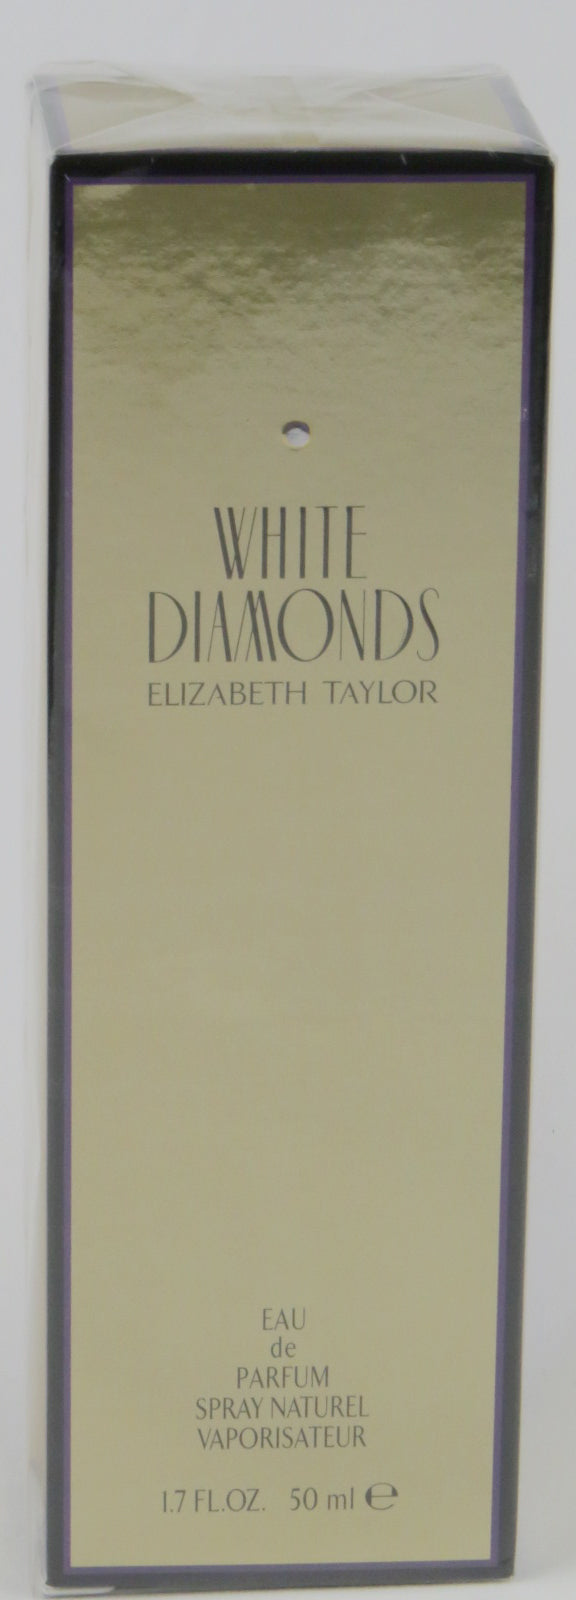 Perfume WHITE DIAMONDS by Elizabeth Taylor Eau De Parfum Spray 1.7 oz for Women - Banachief Outlet